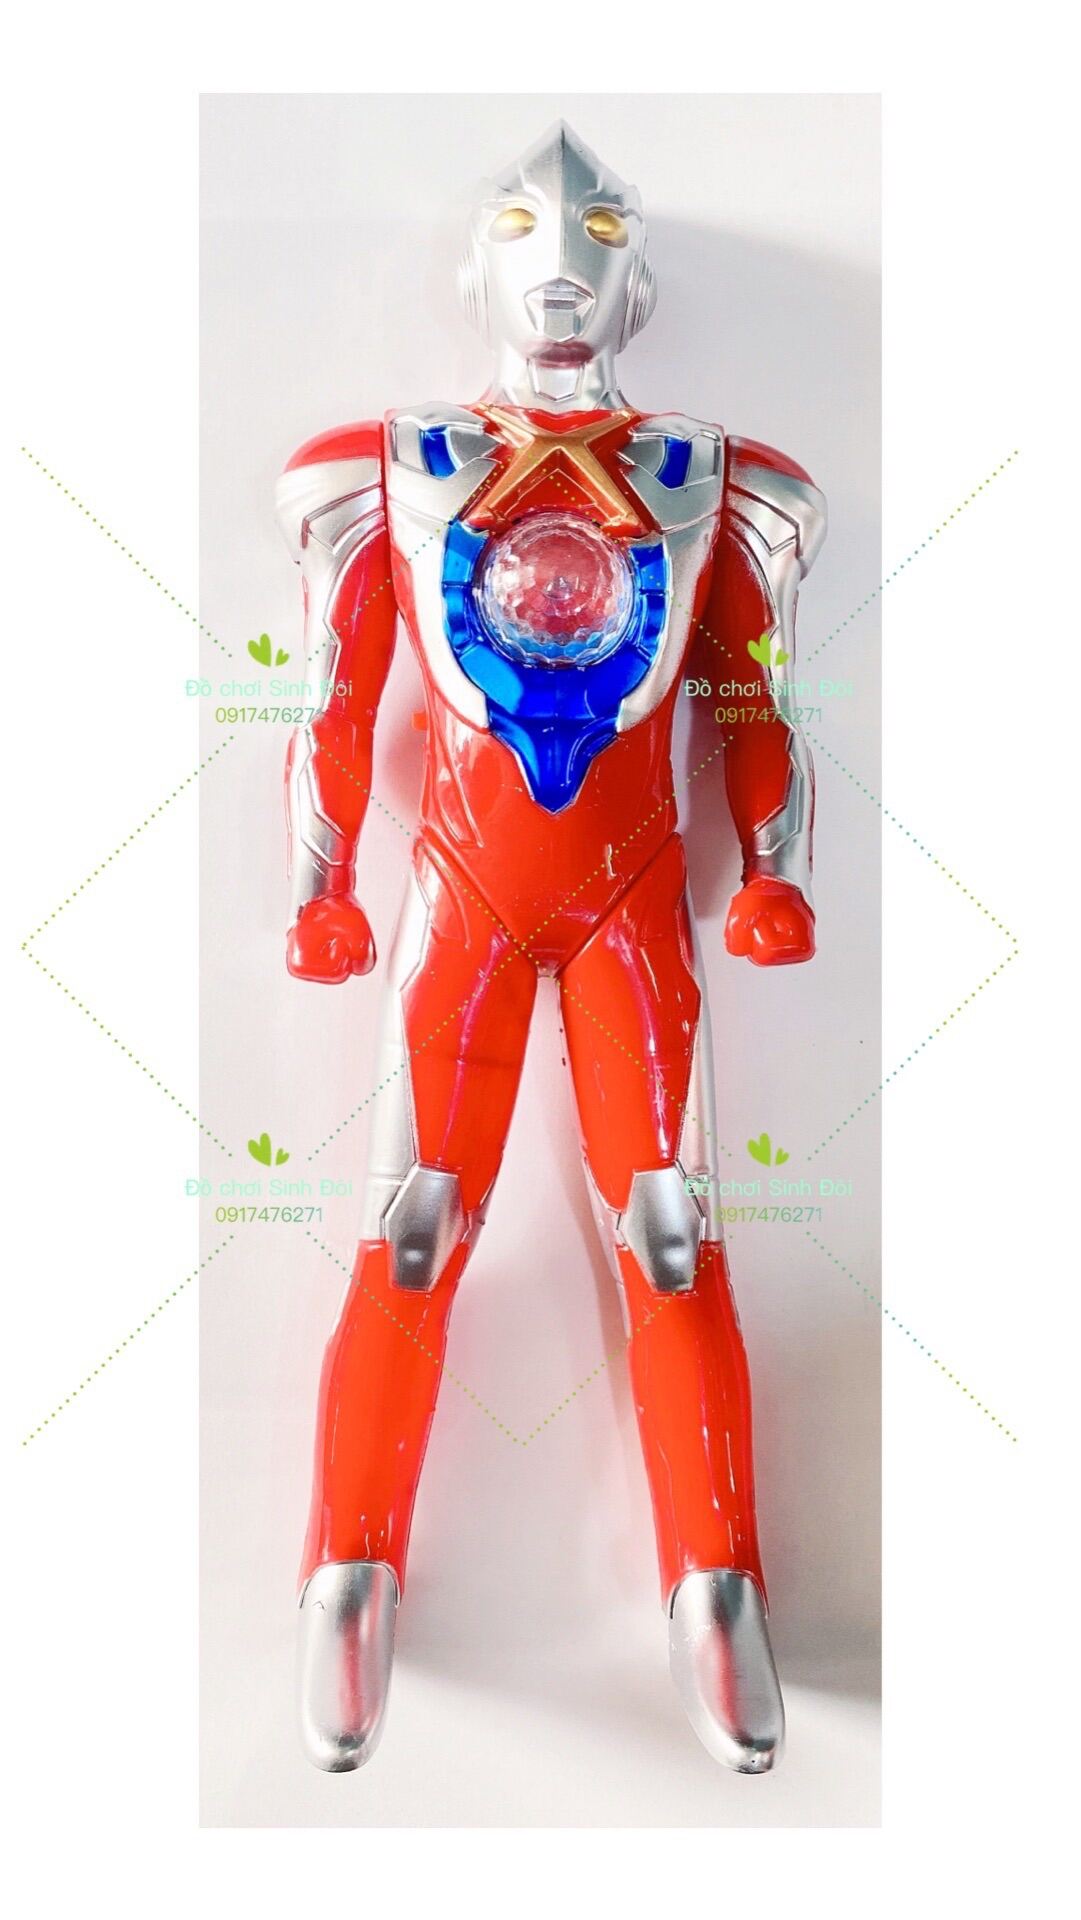 Đồ chơi mô hình siêu nhân điện quang Ultraman dùng pin 1604A